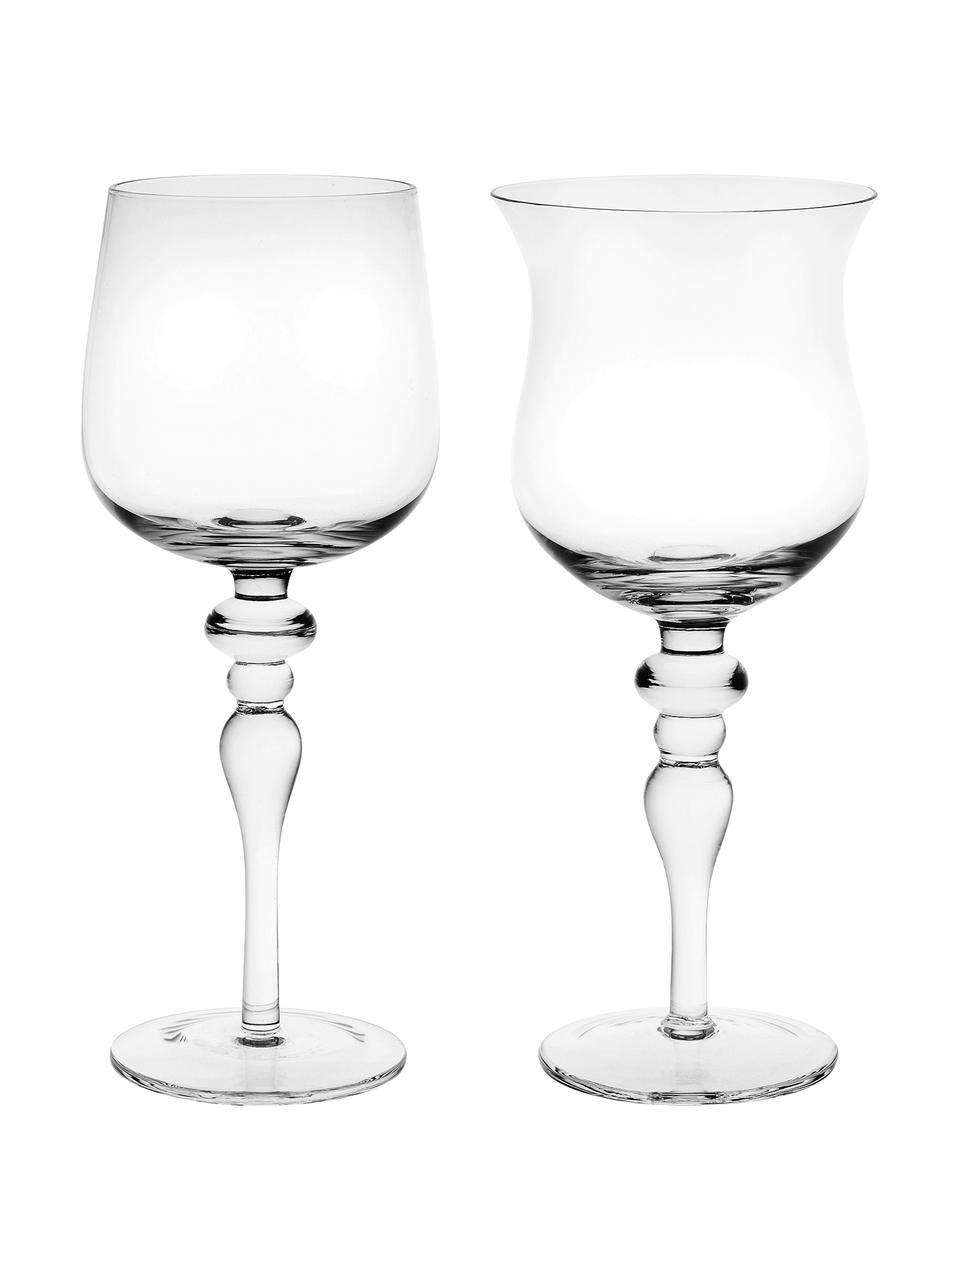 Mundgeblasene Weingläser Diseguale in unterschiedlichen Formen, 6er-Set, Glas, mundgeblasen, Transparent, Ø 8 x H 20 cm, 200 ml